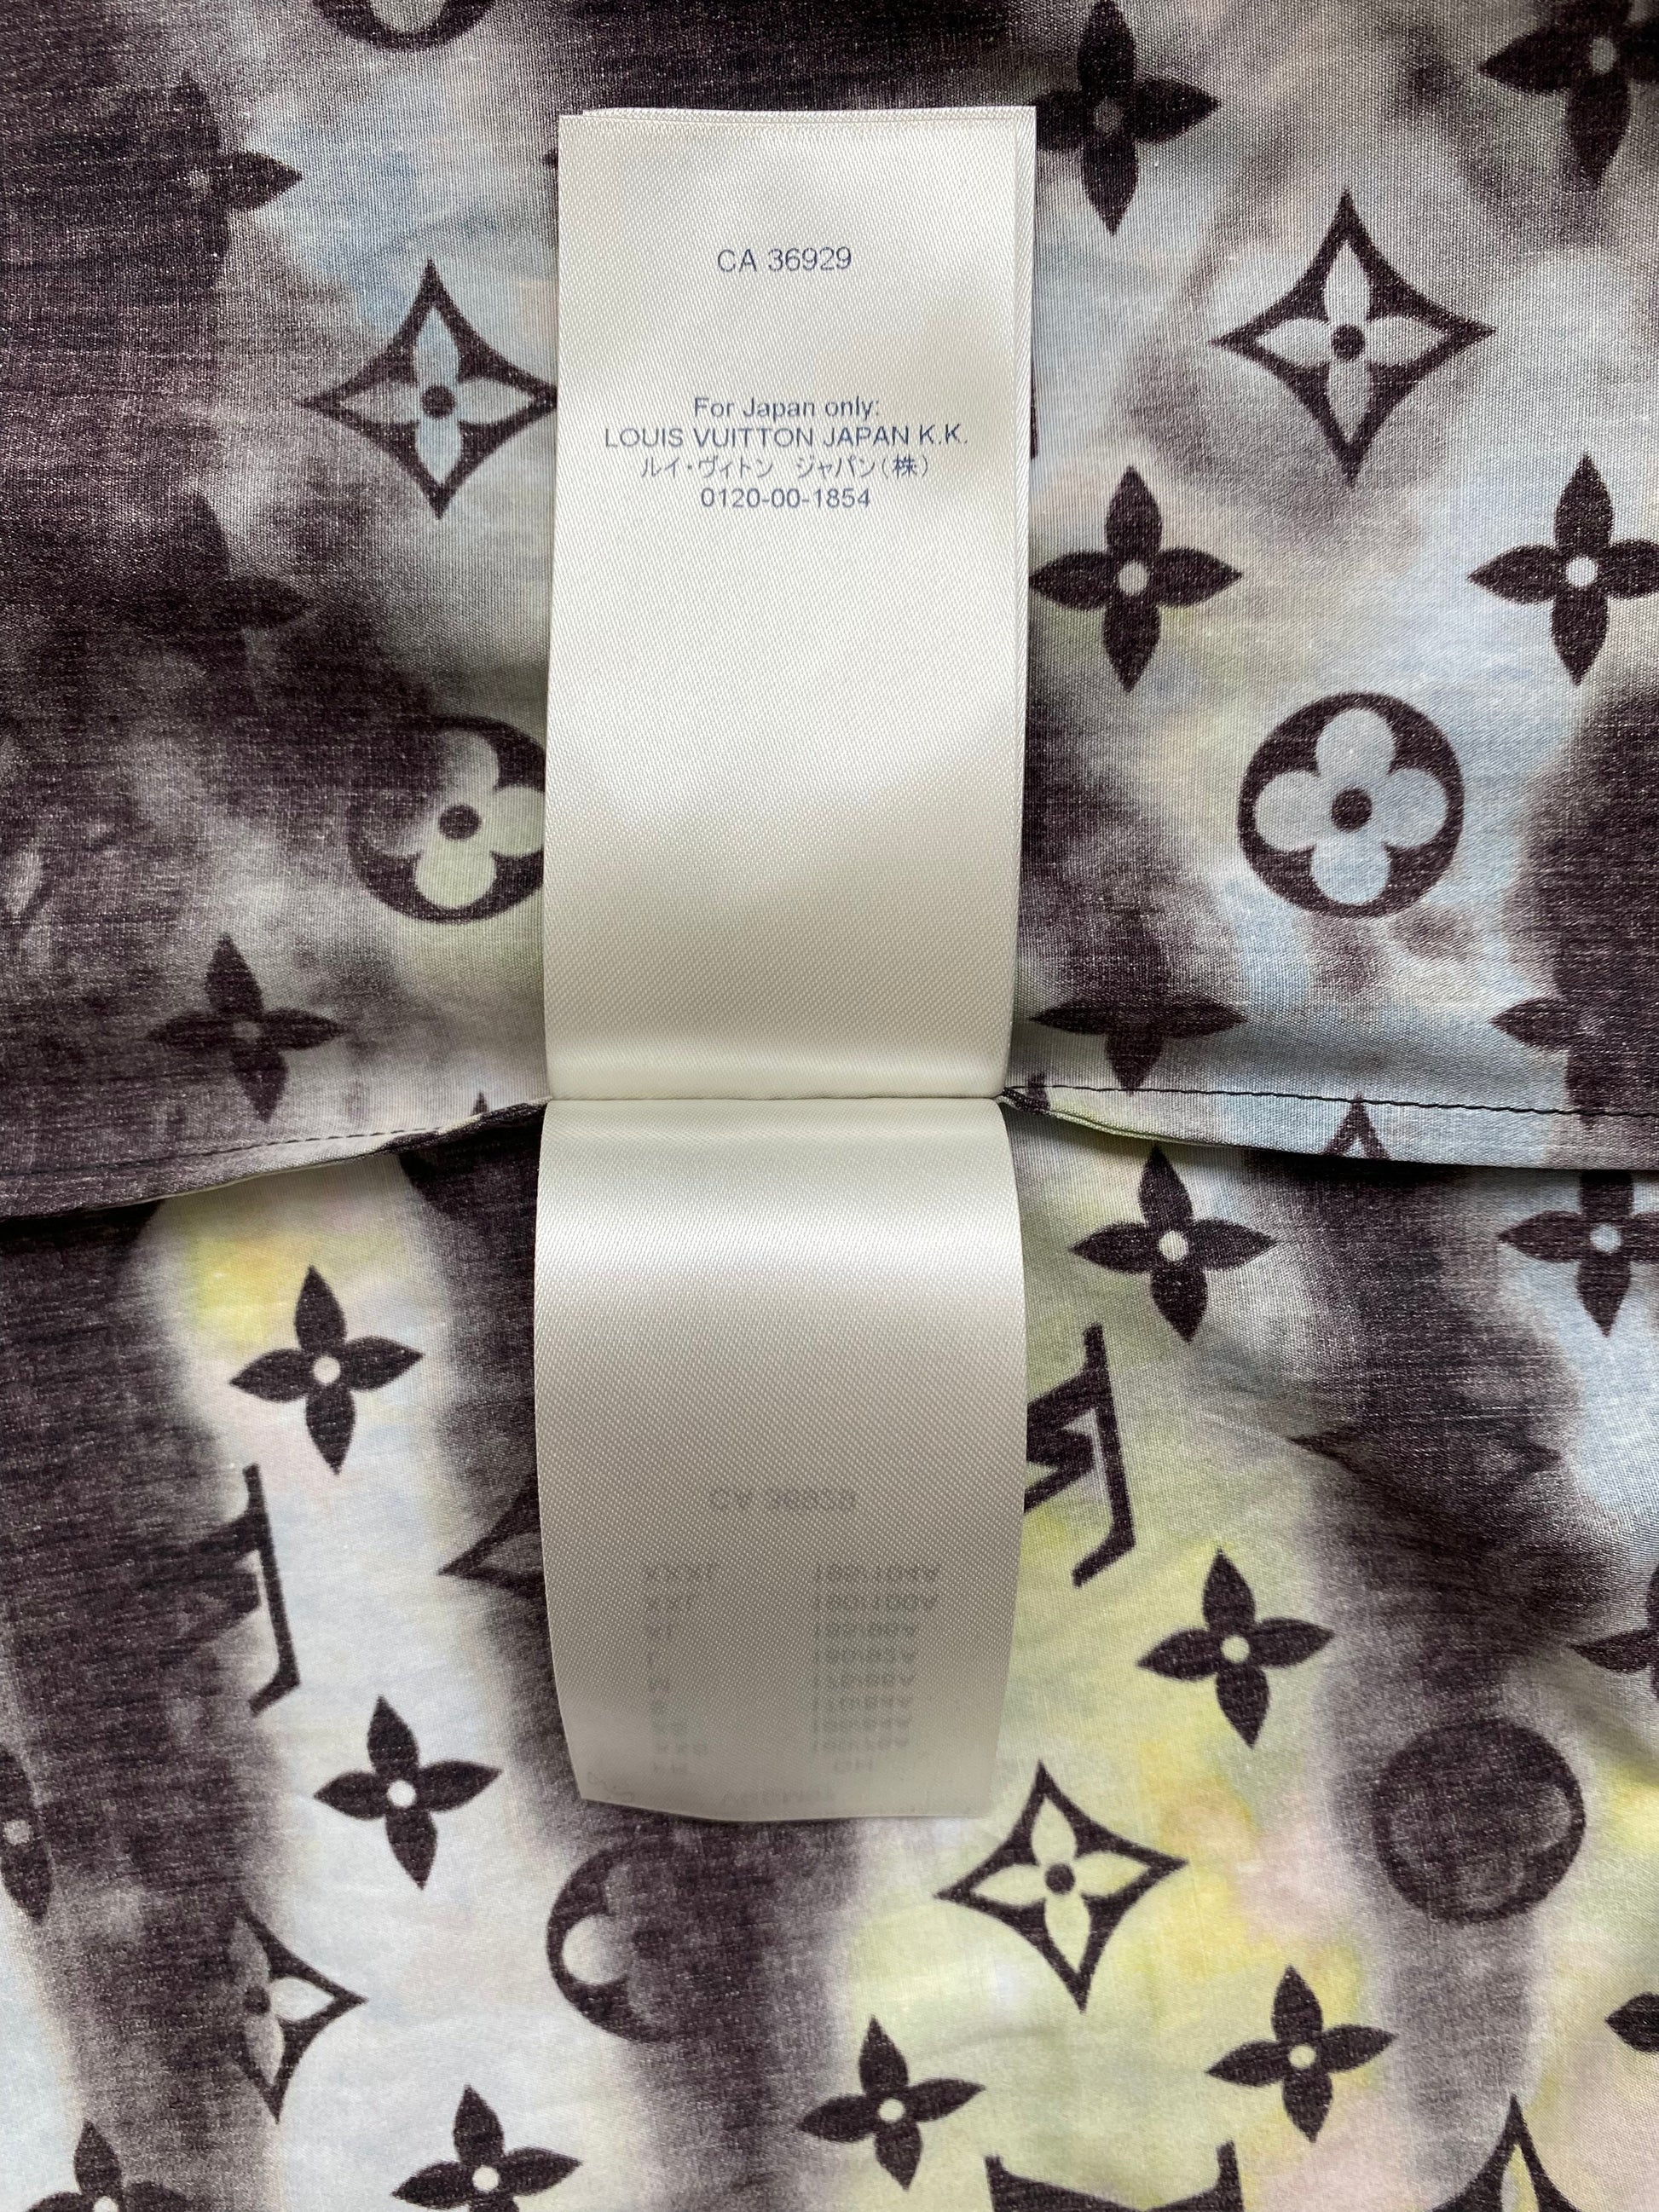 Louis Vuitton Zipped Monogram Tie-Dye Shirt Multicolor for Men